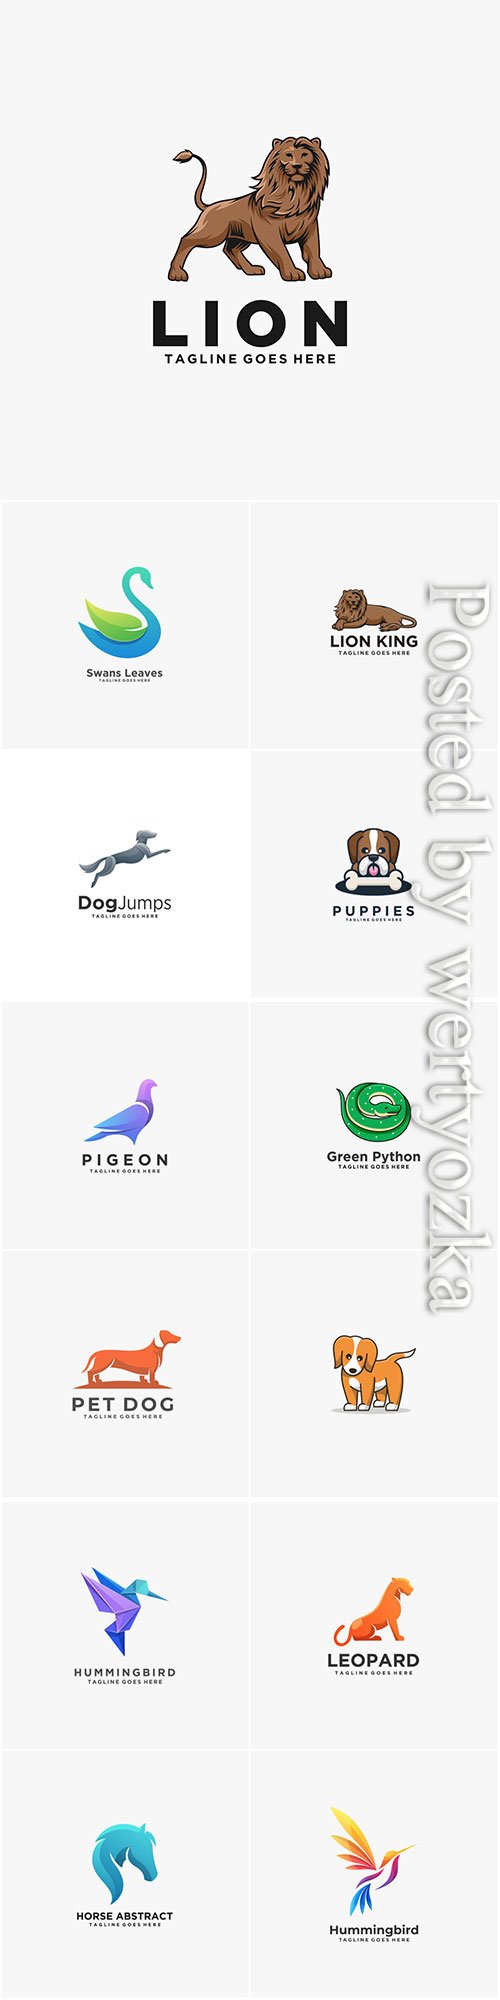 Animals and birds logos in vector vol 6